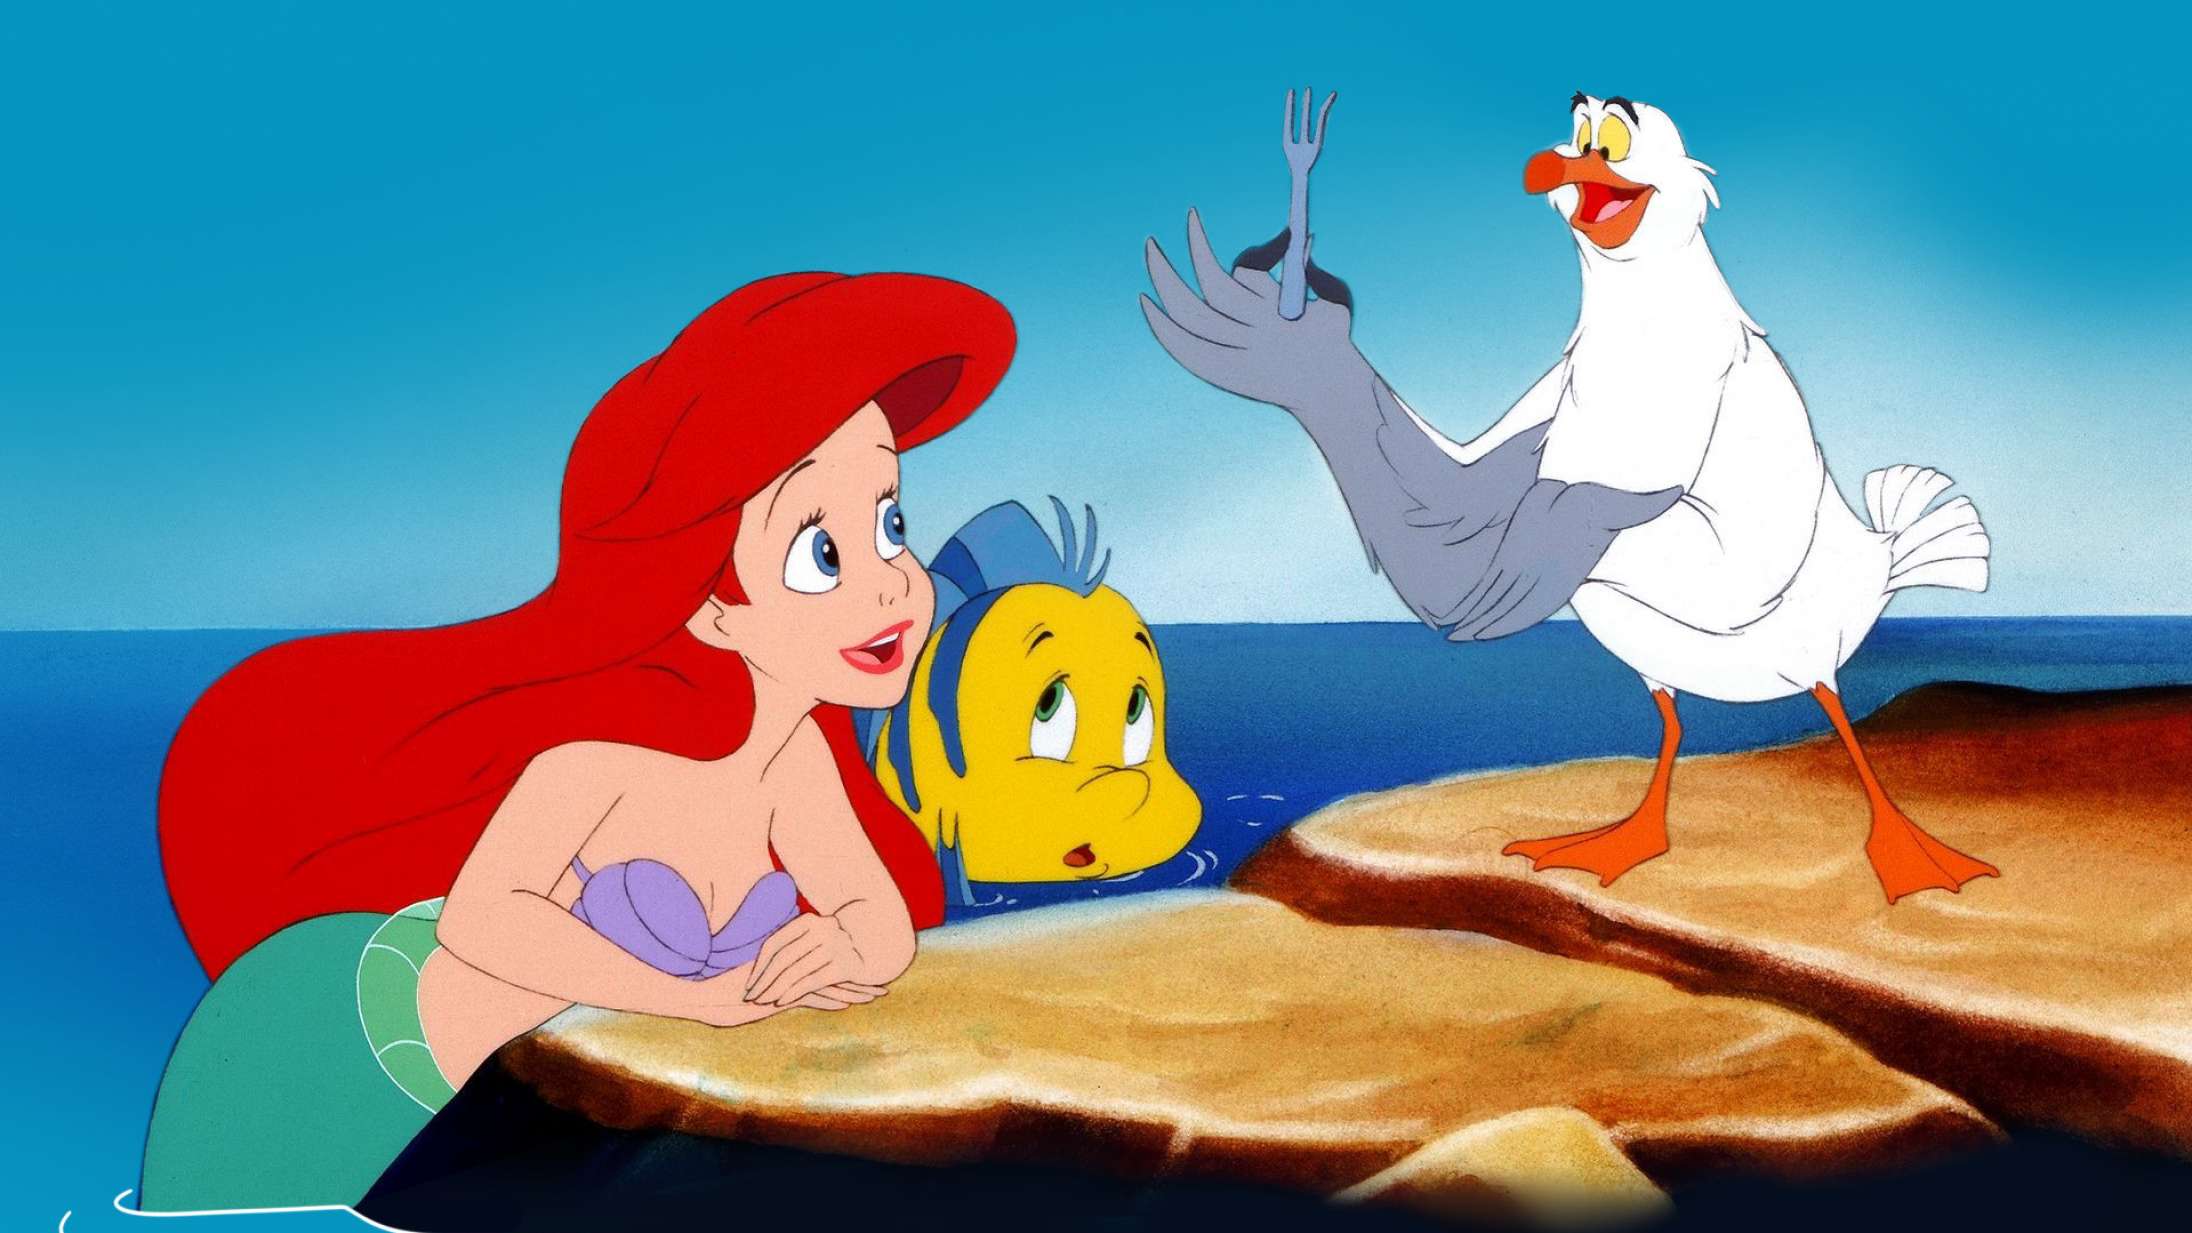 Internettet græder over livagtig fisk i ‘Den lille havfrue’-remake